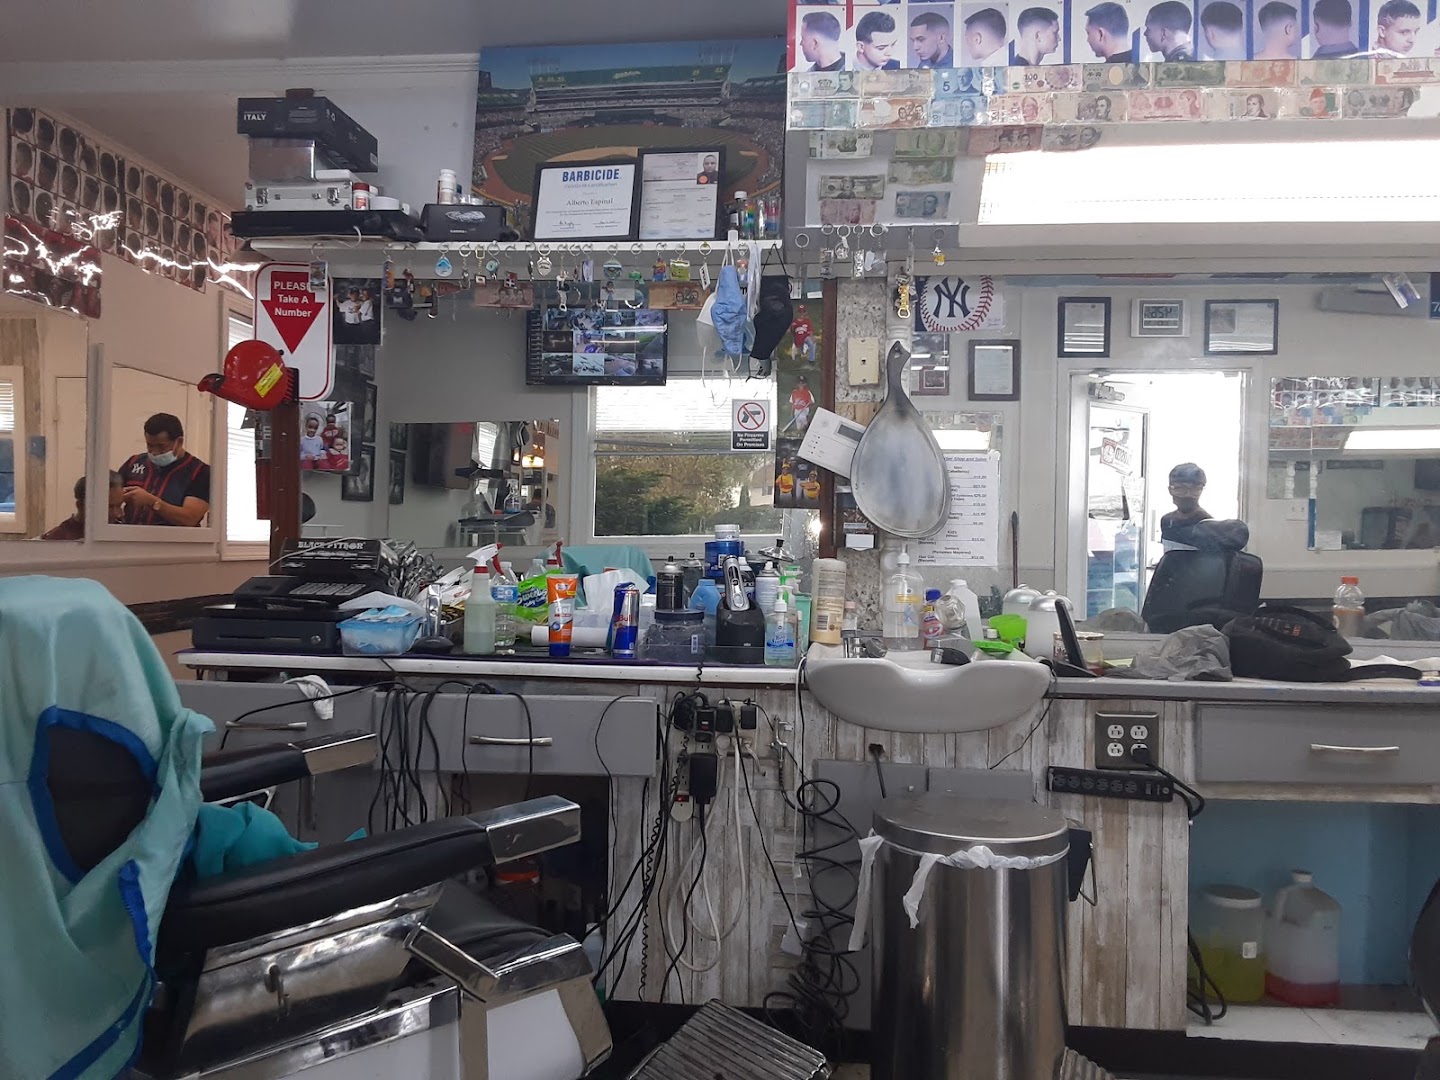 Yankee Barber Shop and Salon